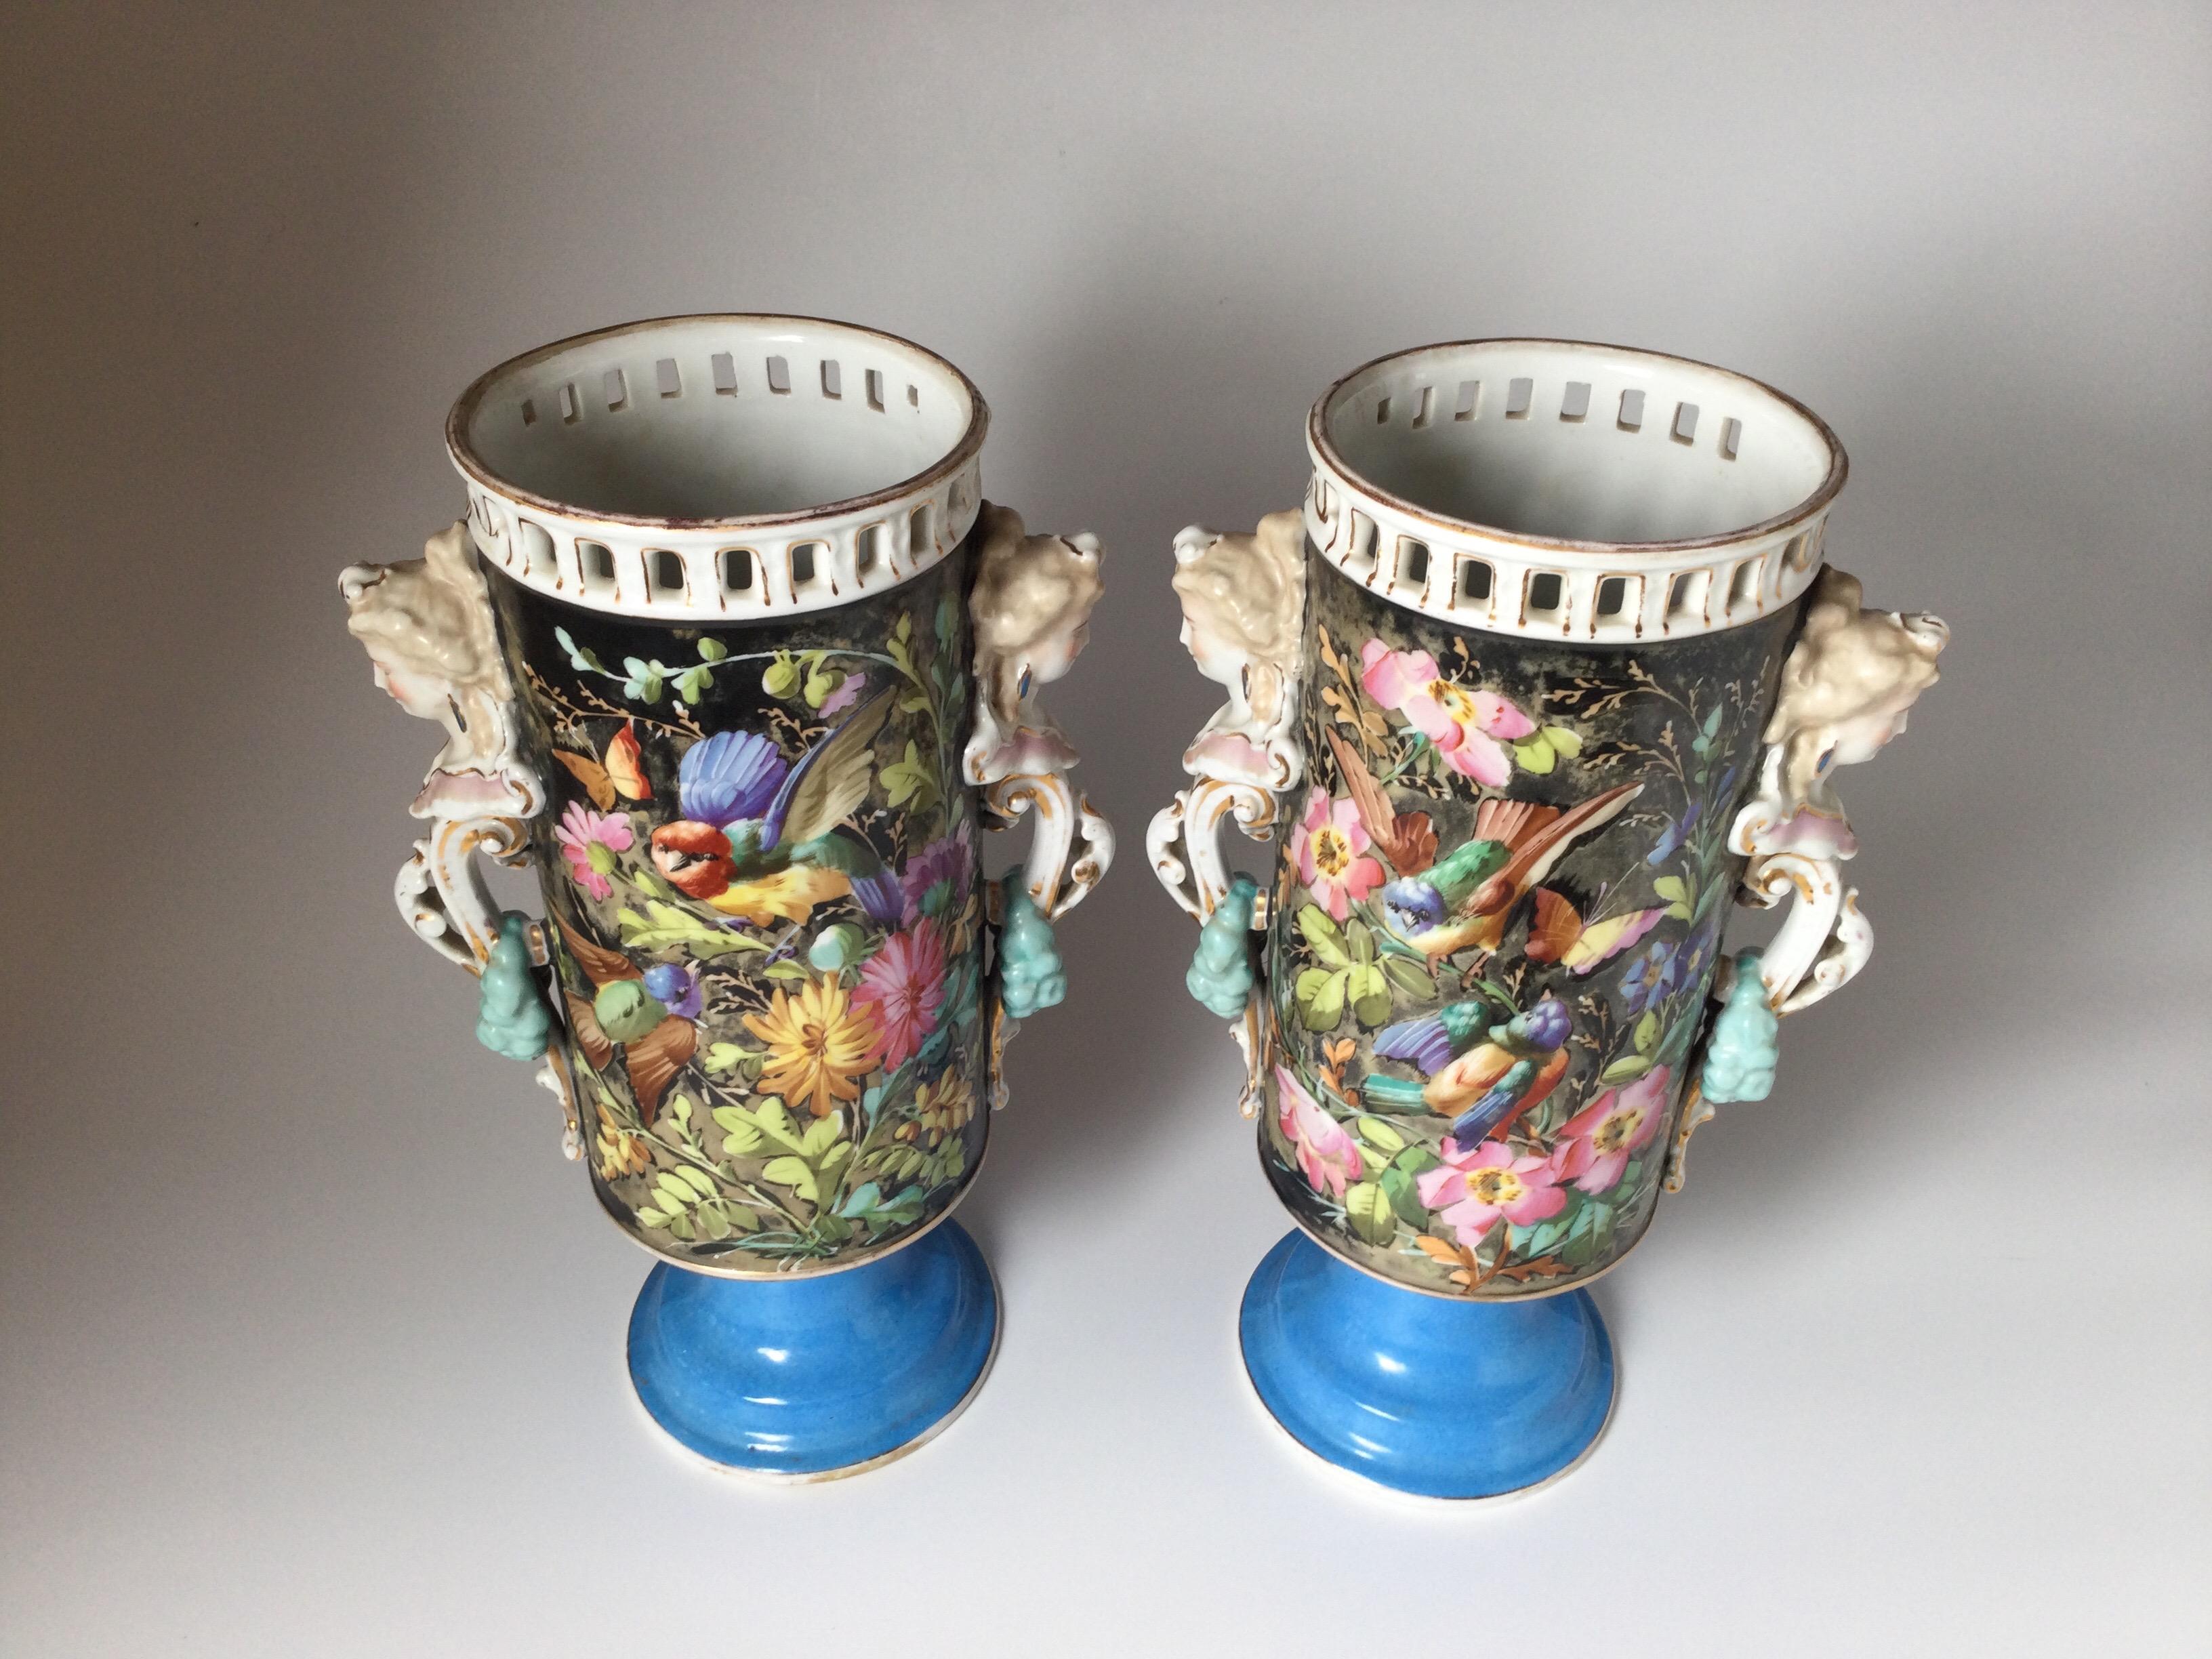 Ein großes Paar Pariser Porzellanvasen mit zwei Henkeln und Blumen- und Vogeldekor. Die Ränder mit netzartigem Rand und weiblichen figuralen Henkeln ruhen auf einem Sockel in Celest-Blau.